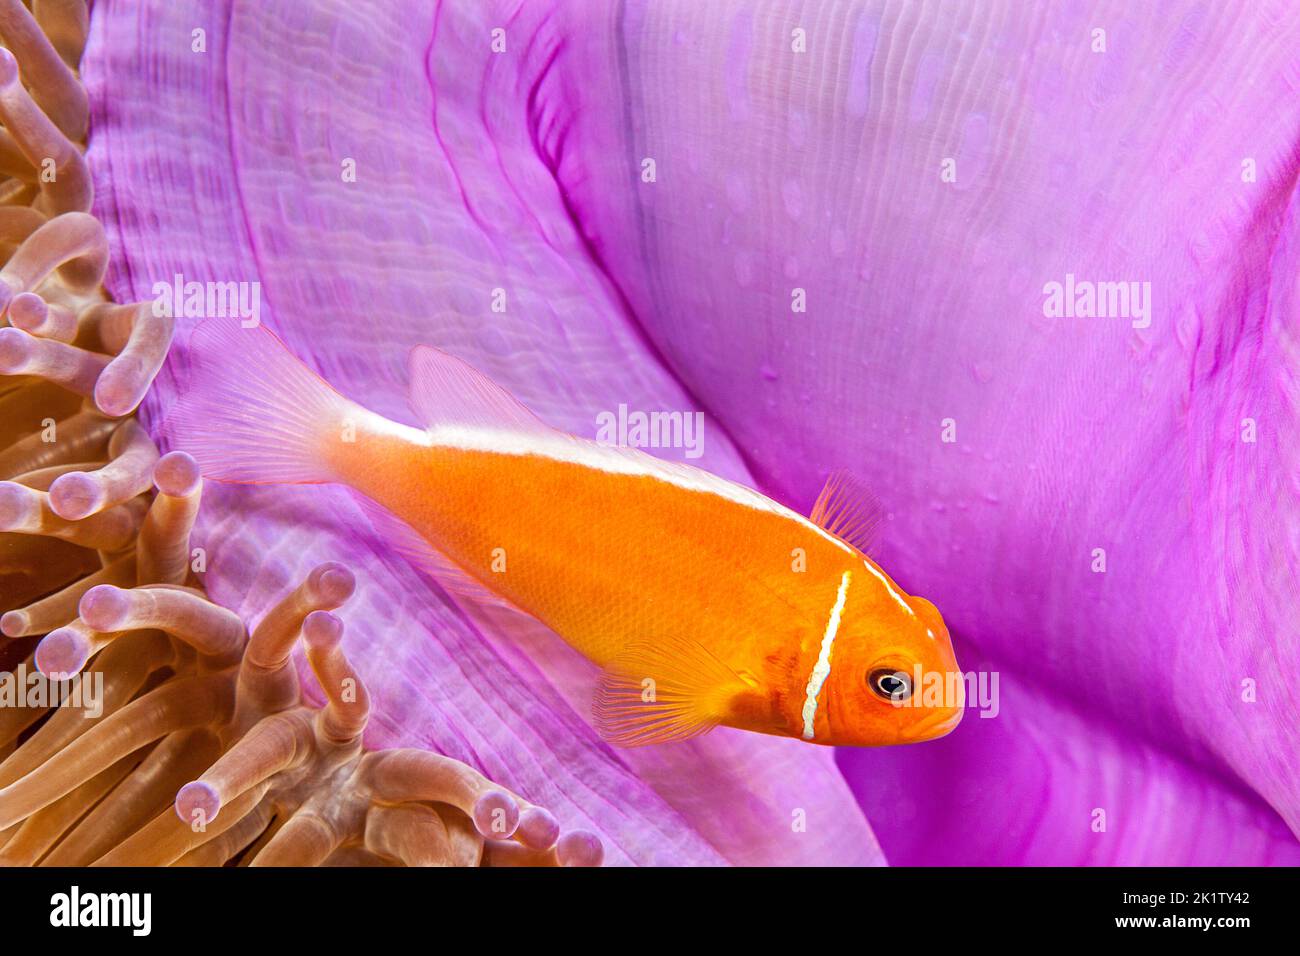 Ce poisson clown Amphiprion perideraion, commune, se trouve le plus souvent associé à l'anémone, Heteractis magnifica, comme illustré ici, Yap, Microne Banque D'Images